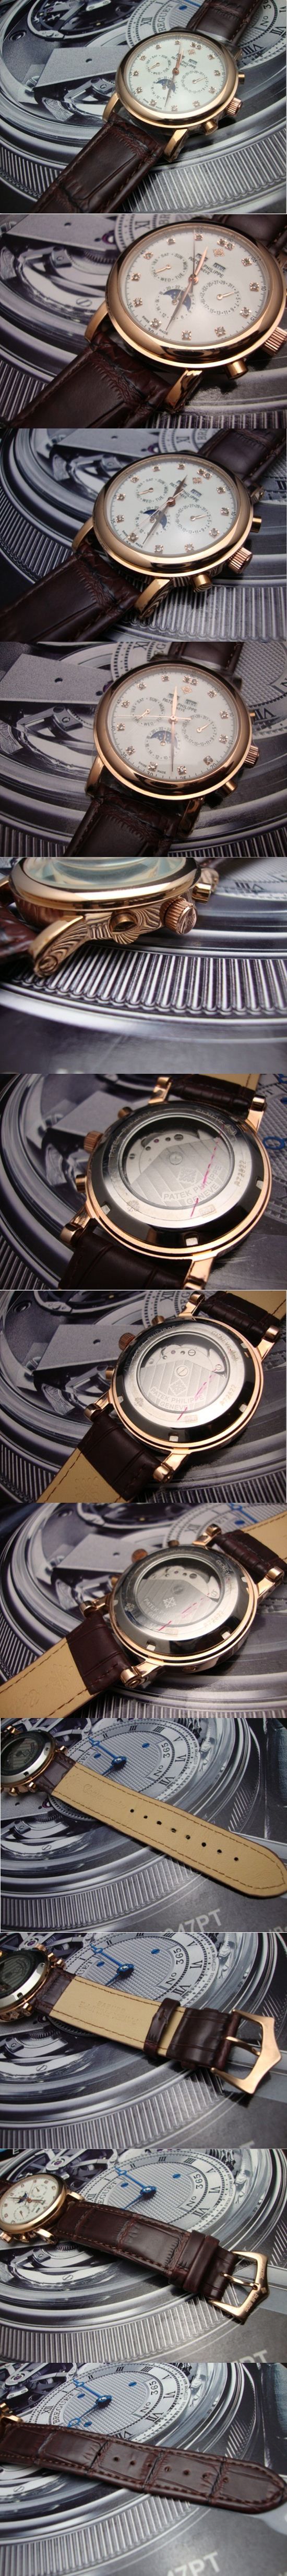 おしゃれなブランド時計がPATEK PHILIPPE-パテック フィリップ腕時計 パテック フィリップ 男/女腕時計 PATEK-PHILIPPE-N-016A を提供します.